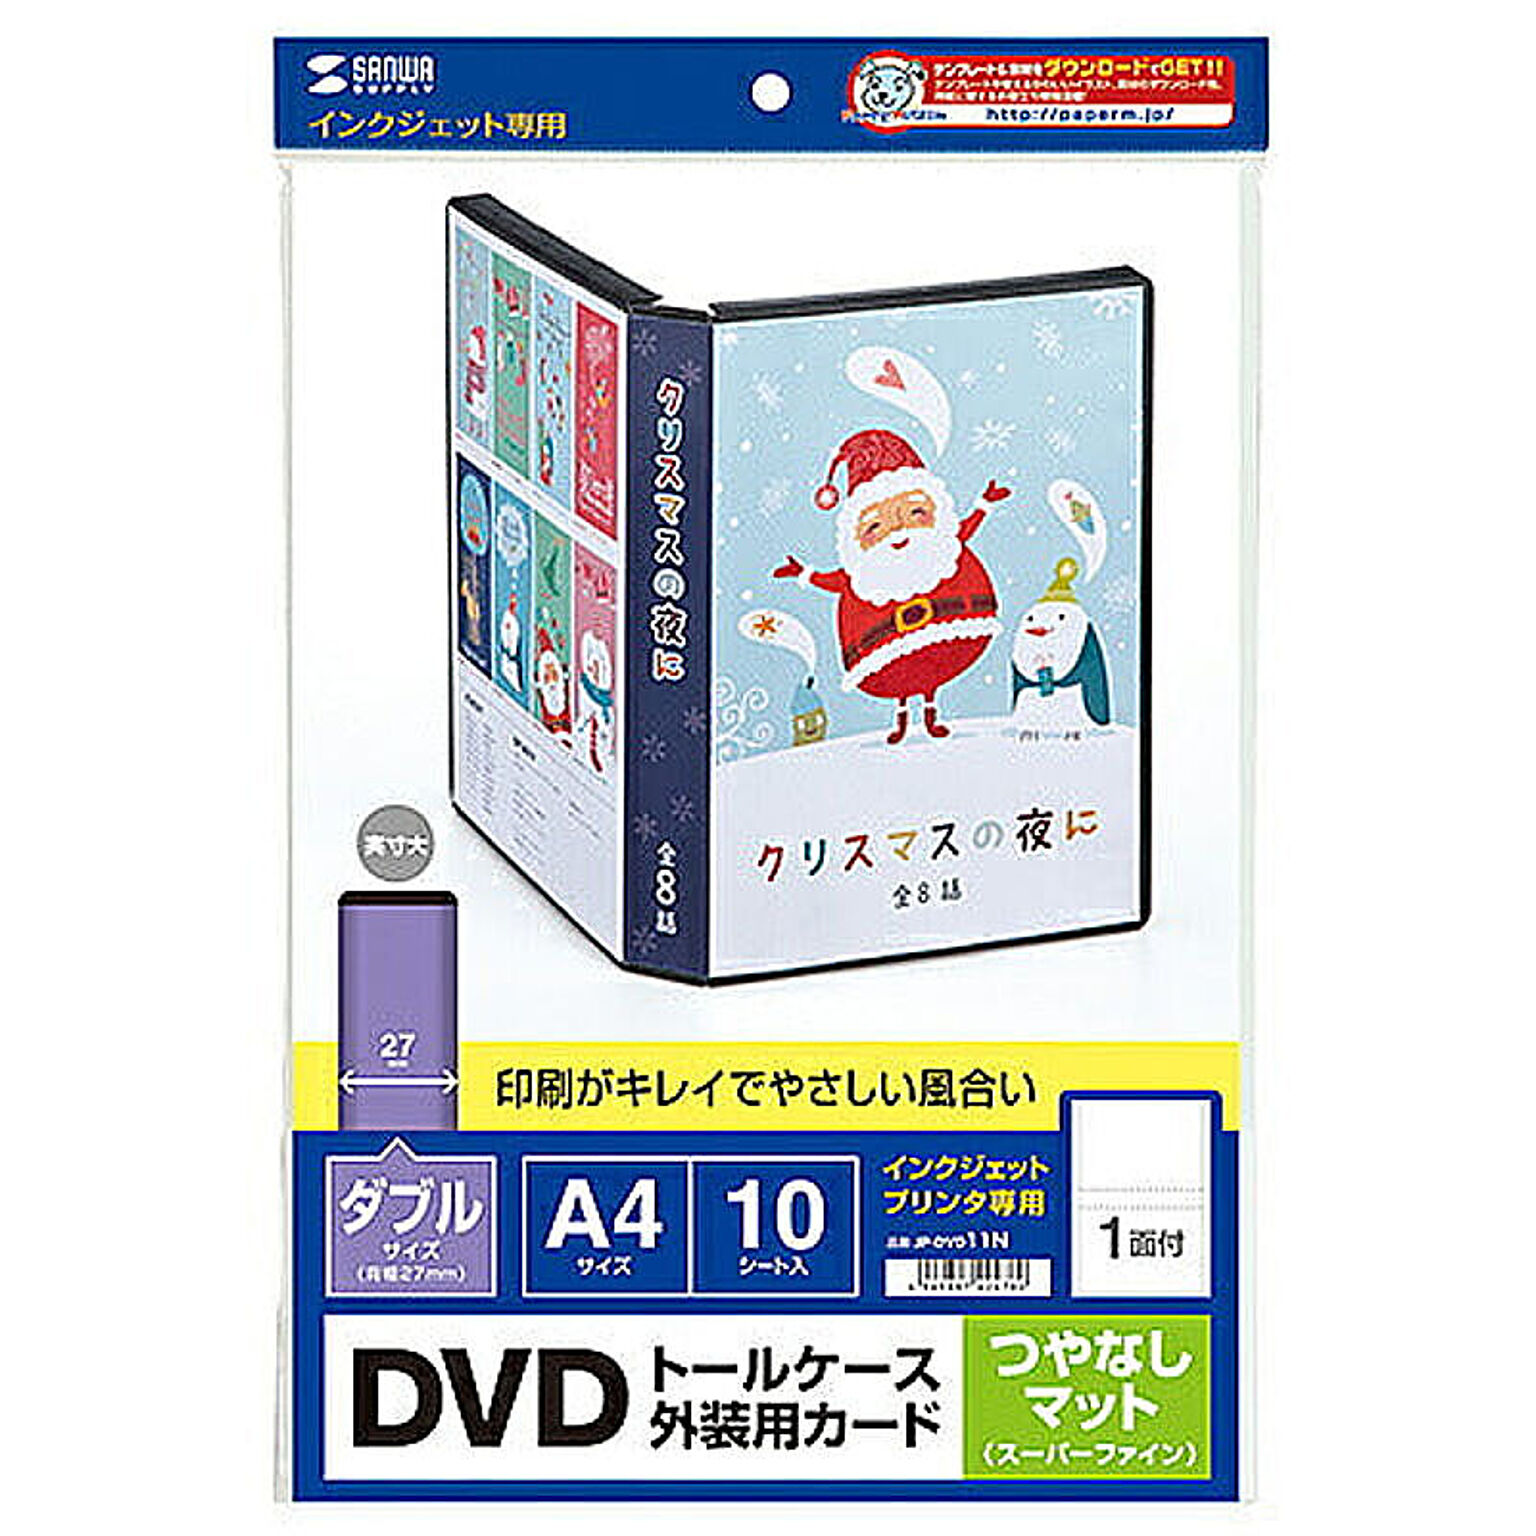 サンワサプライ ダブルサイズDVDトールケース用カード(つやなしマット) JP-DVD11N 管理No. 4969887424780